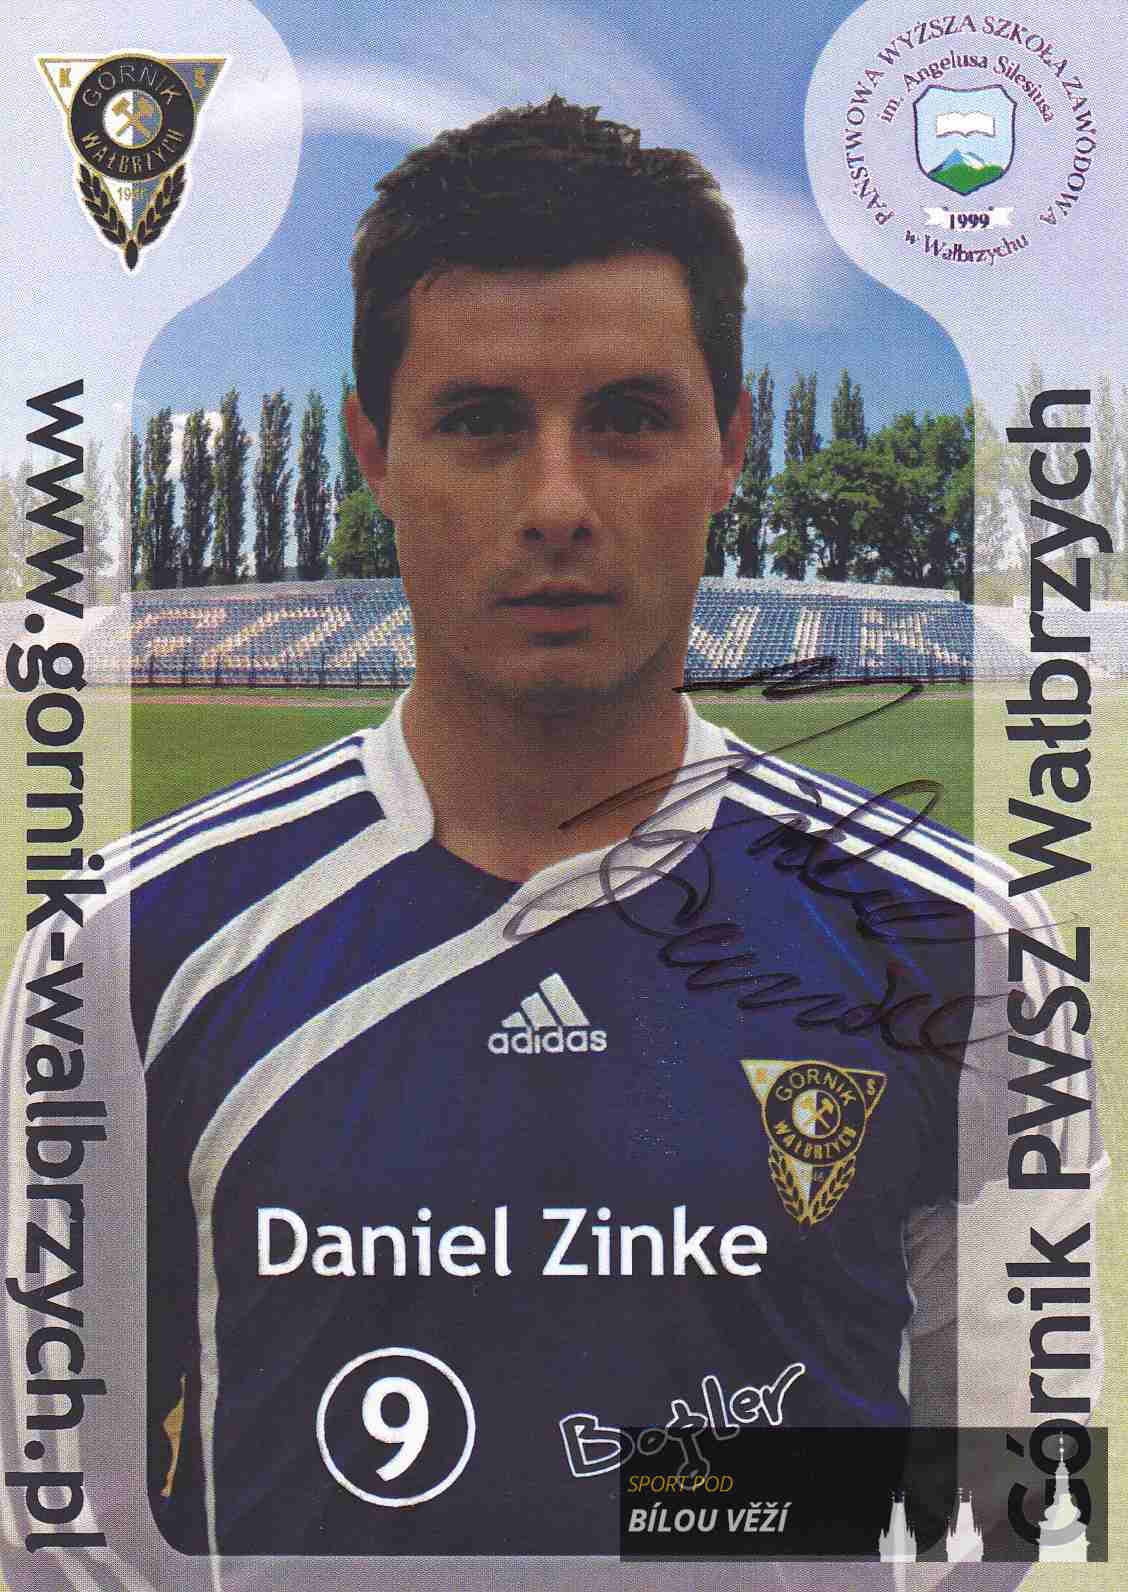 Daniel Zinke